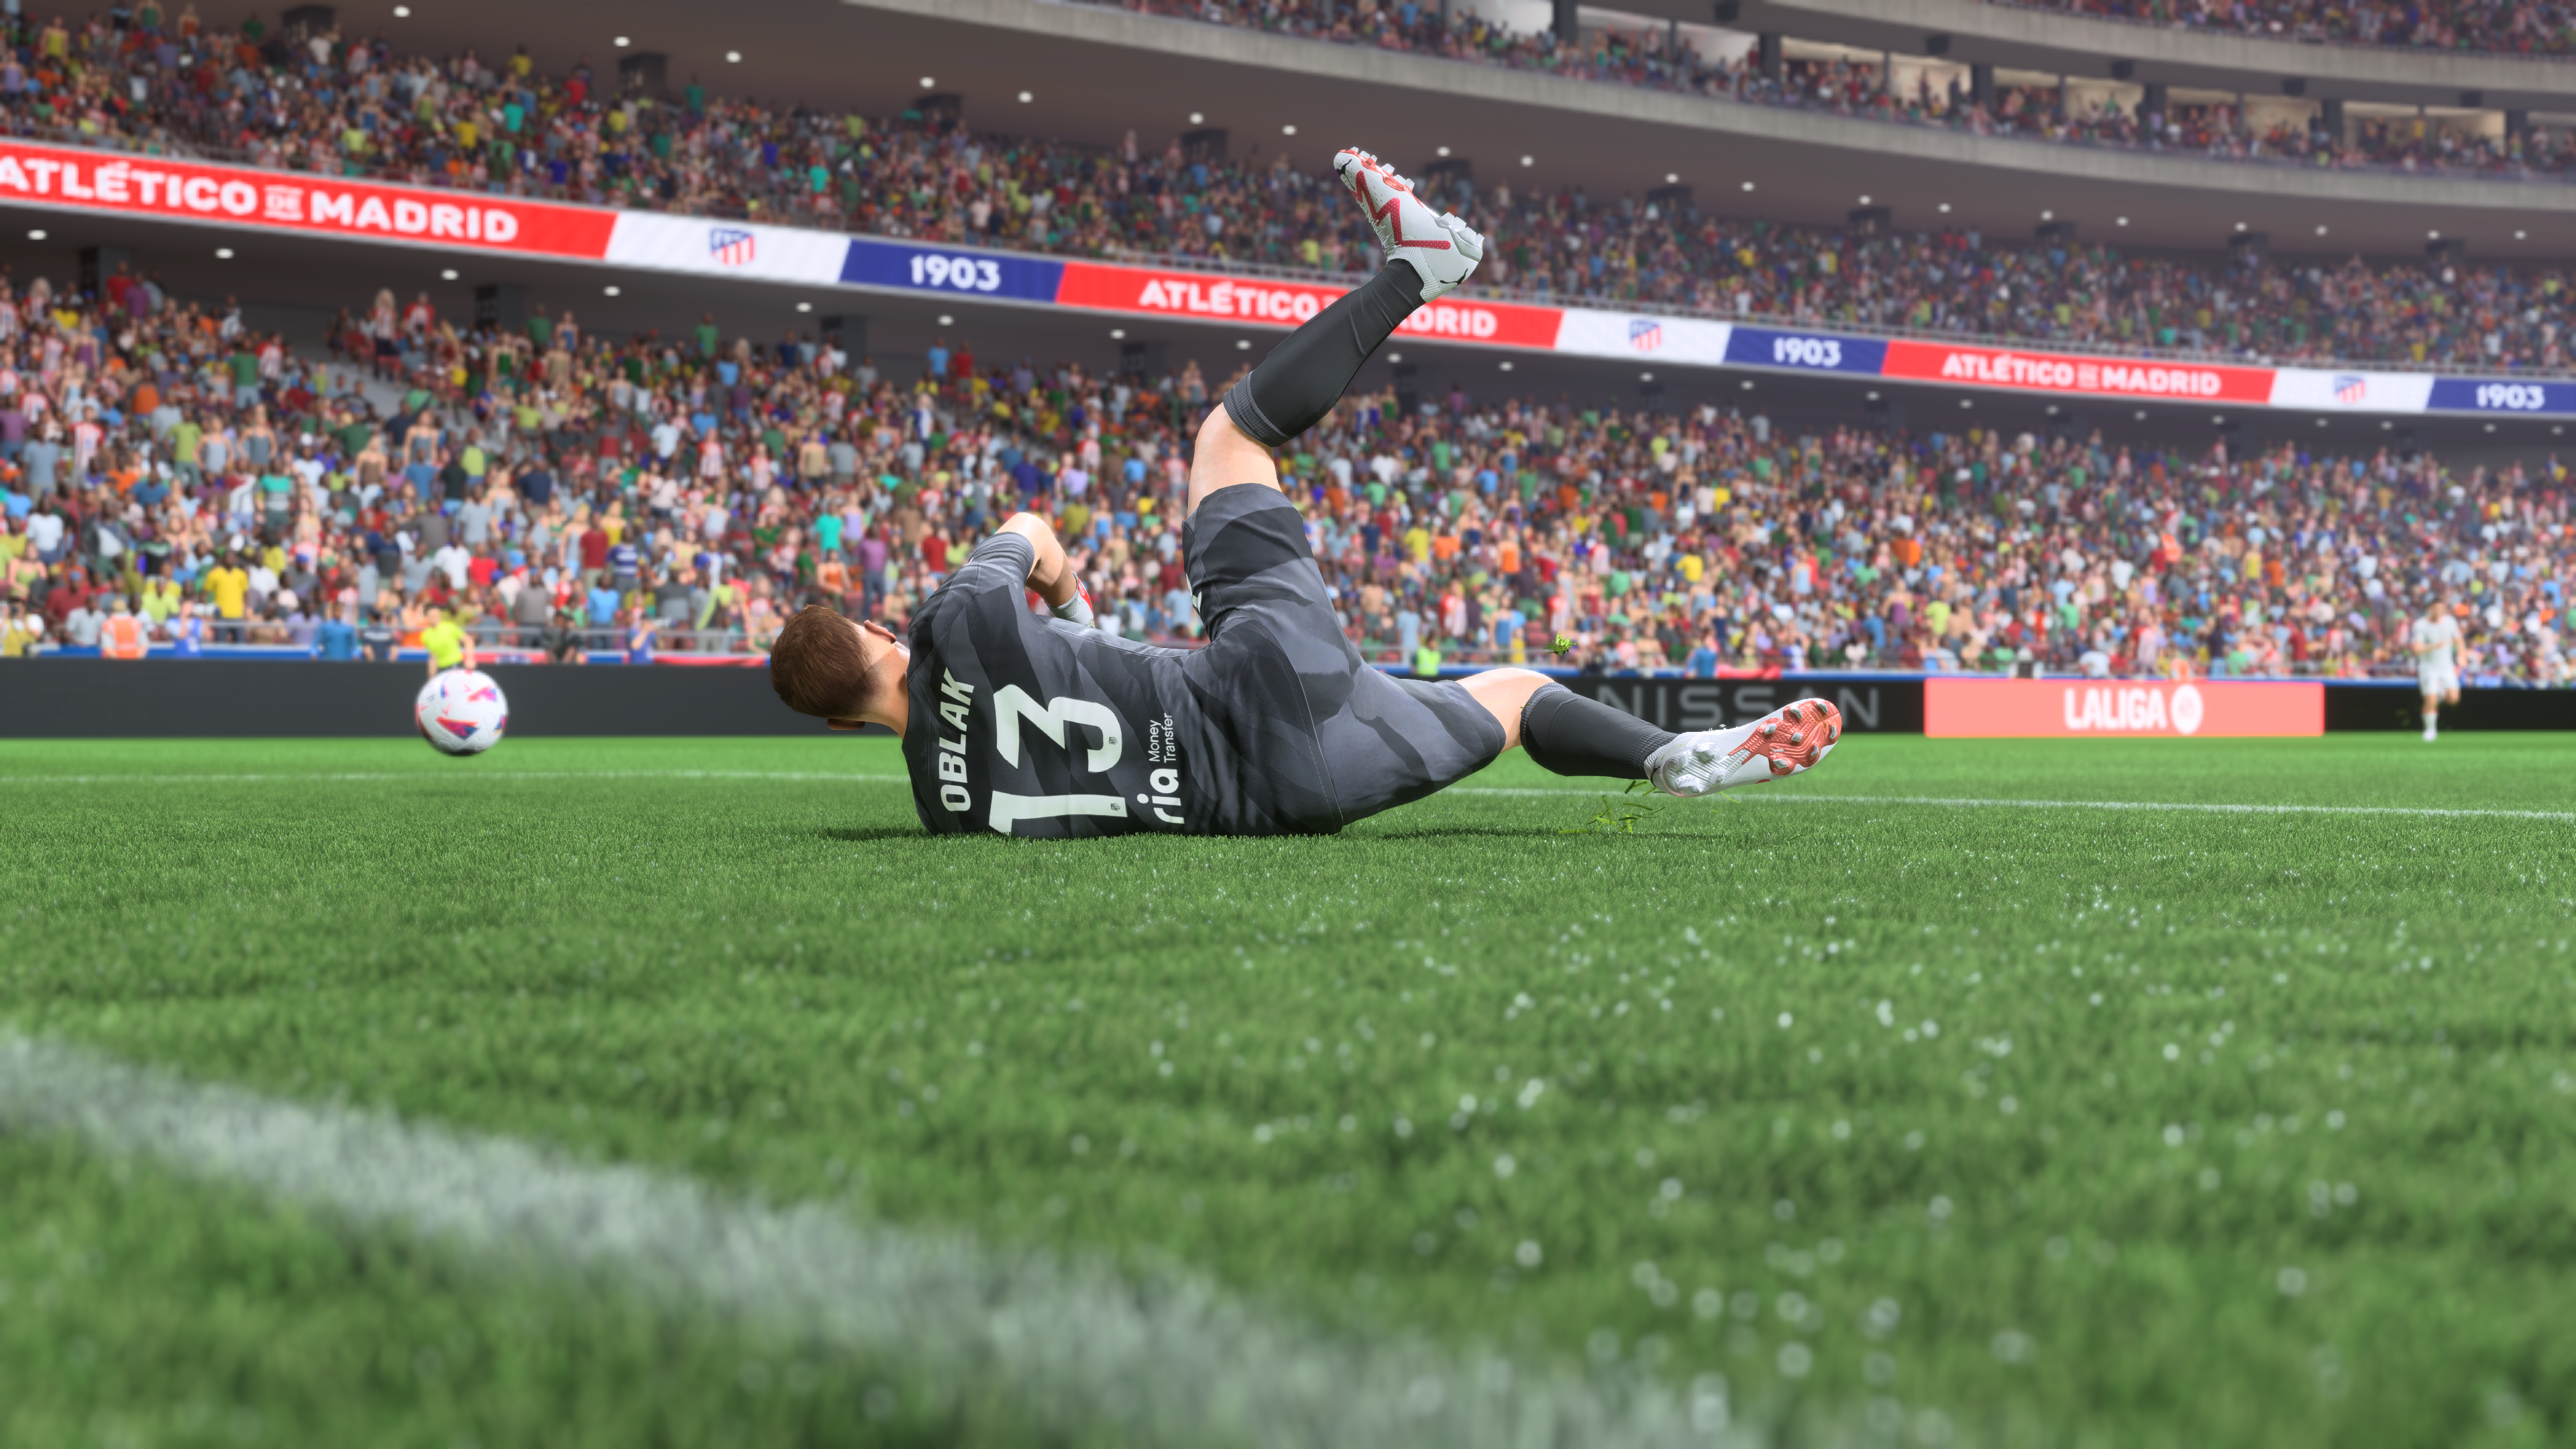 EA Sports FC 24 - Análise